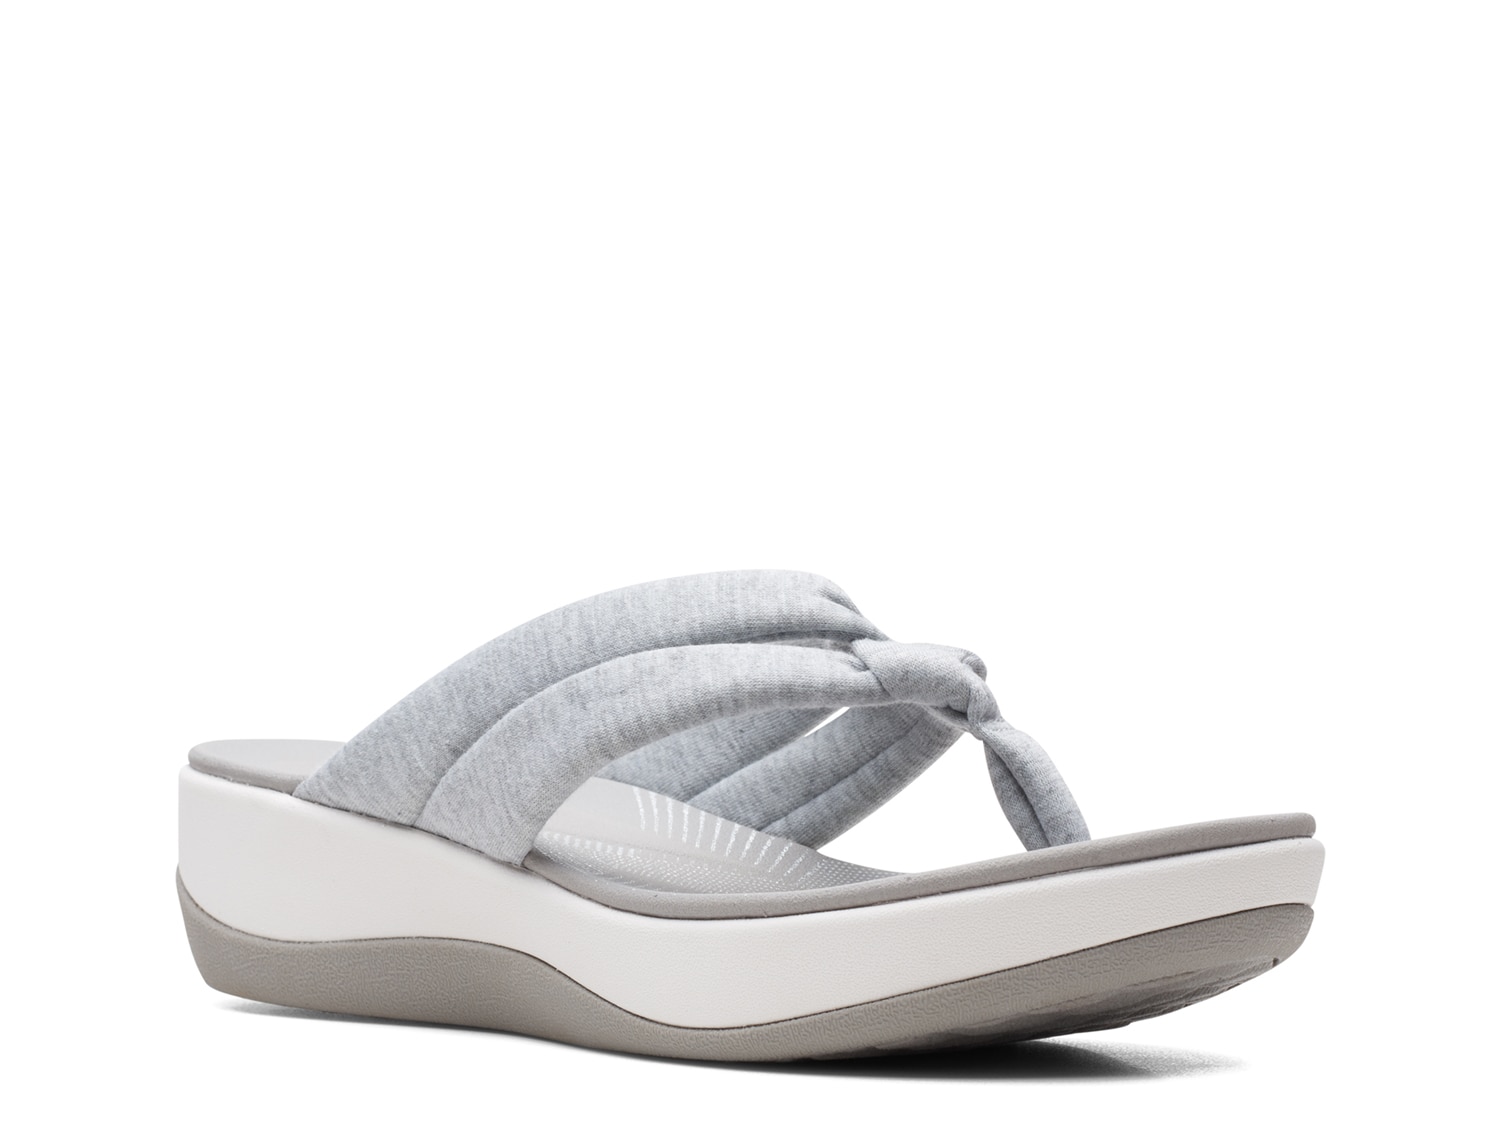 clarks comfort wedge sandals